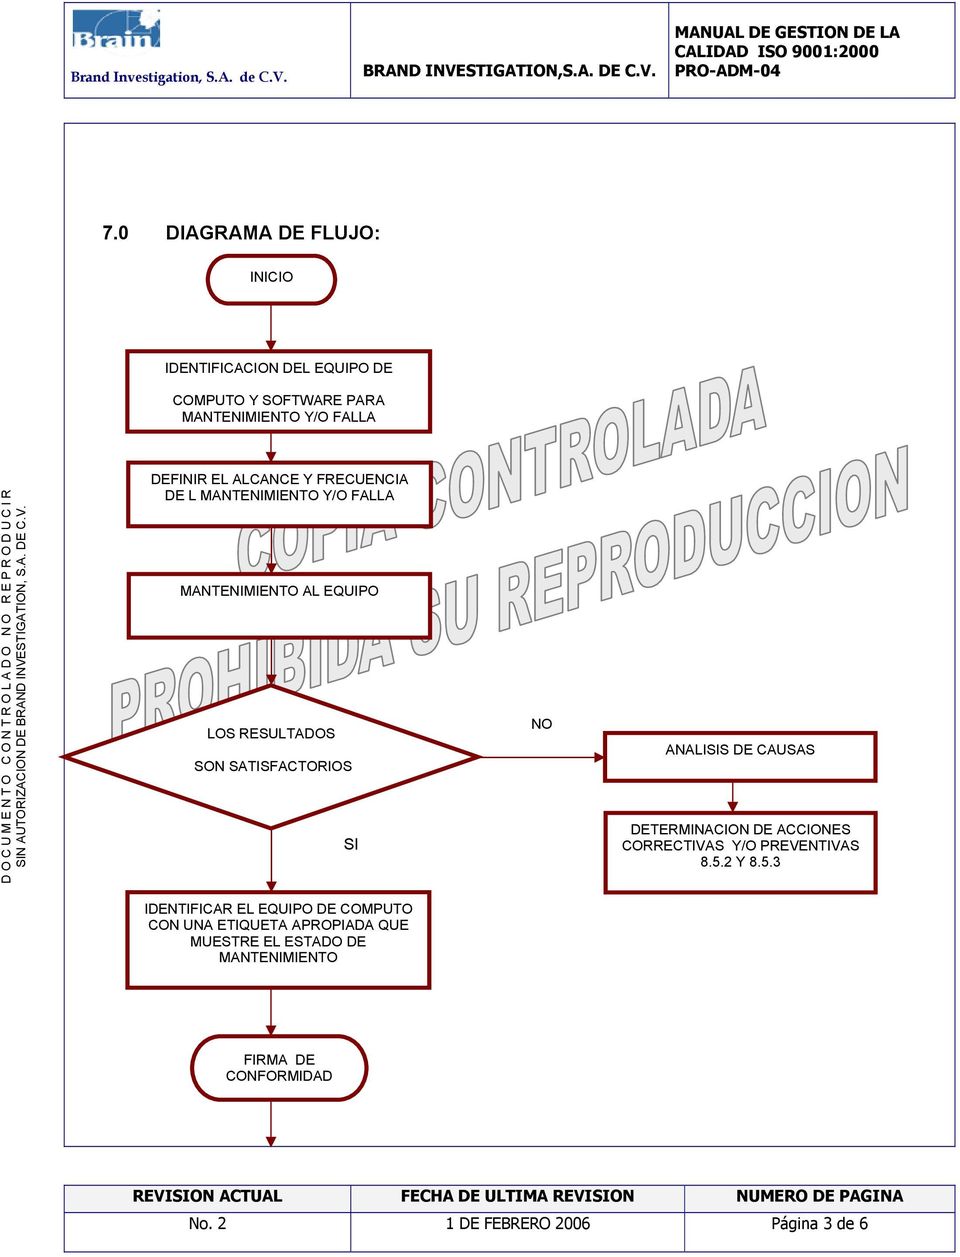 ANALISIS DE CAUSAS DETERMINACION DE ACCIONES CORRECTIVAS Y/O PREVENTIVAS 8.5.